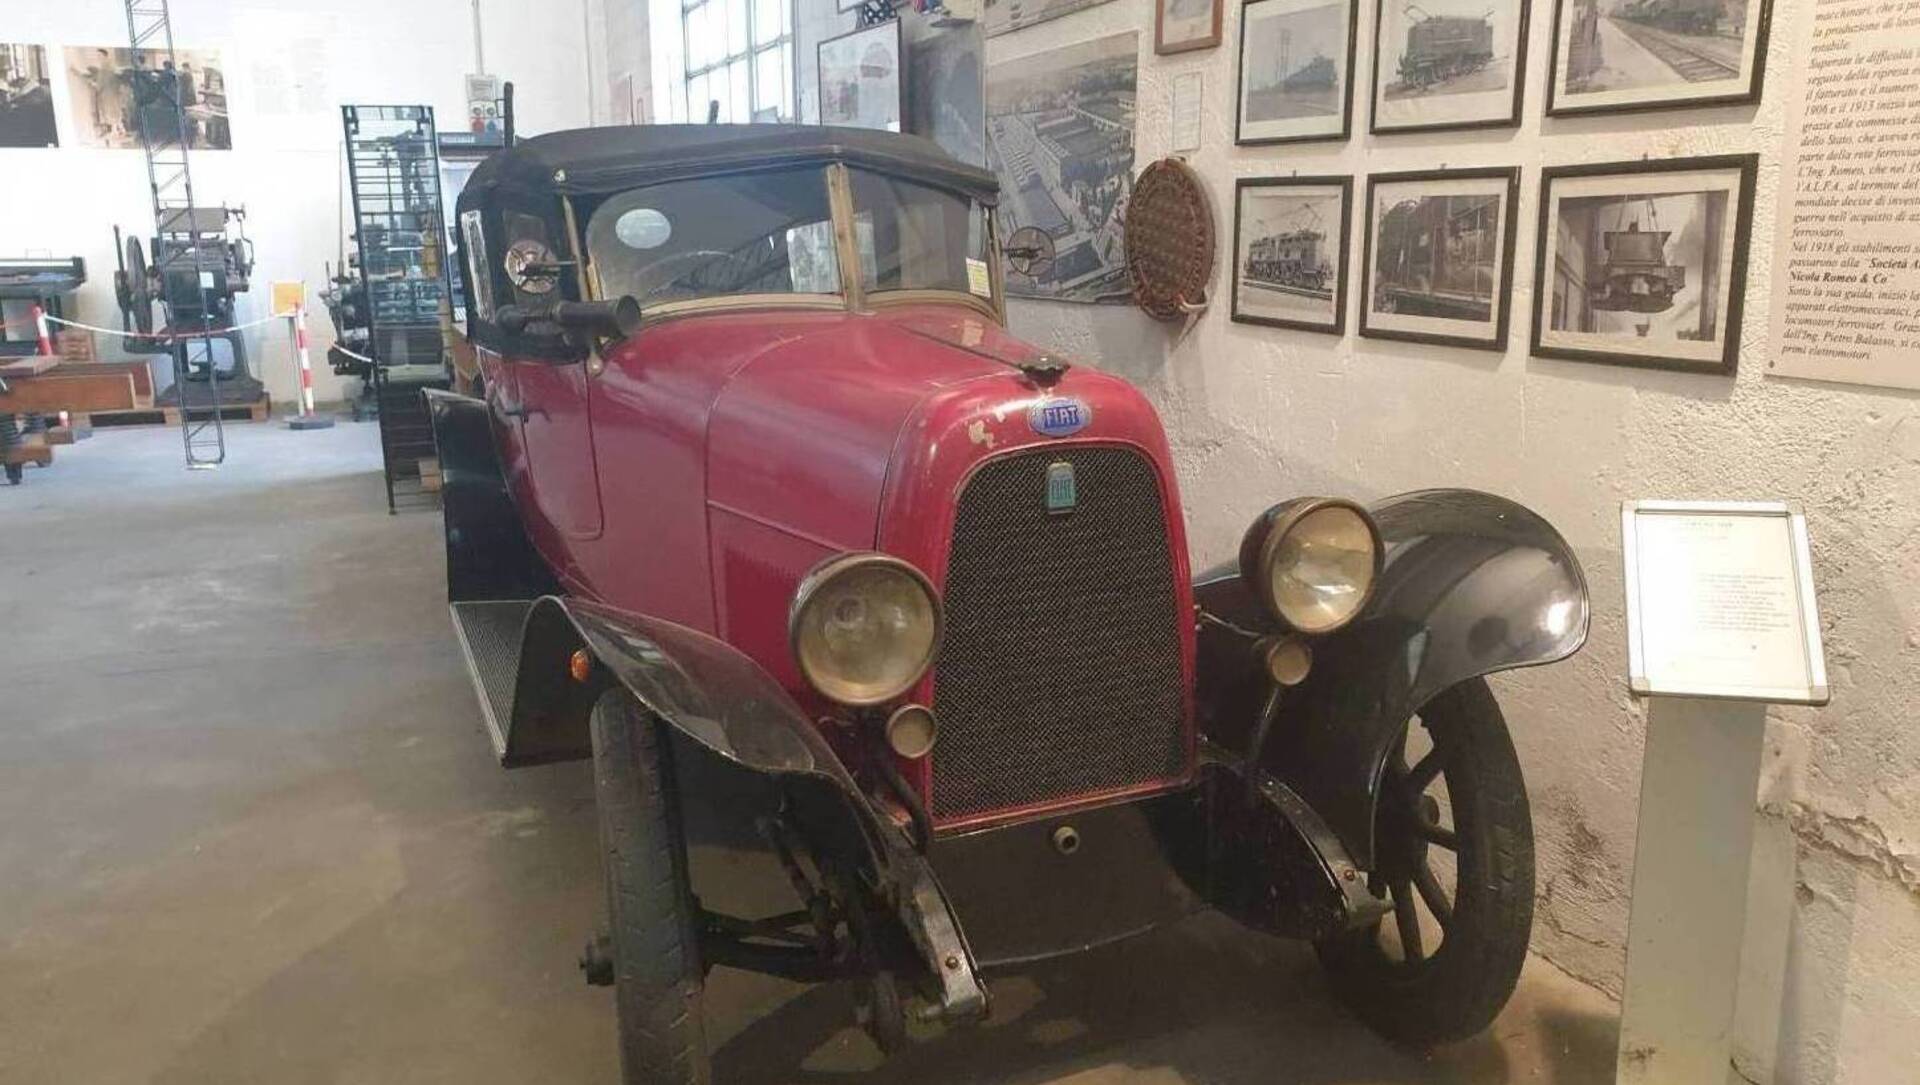 21 dic – Al Mils una Fiat 501 del 1924